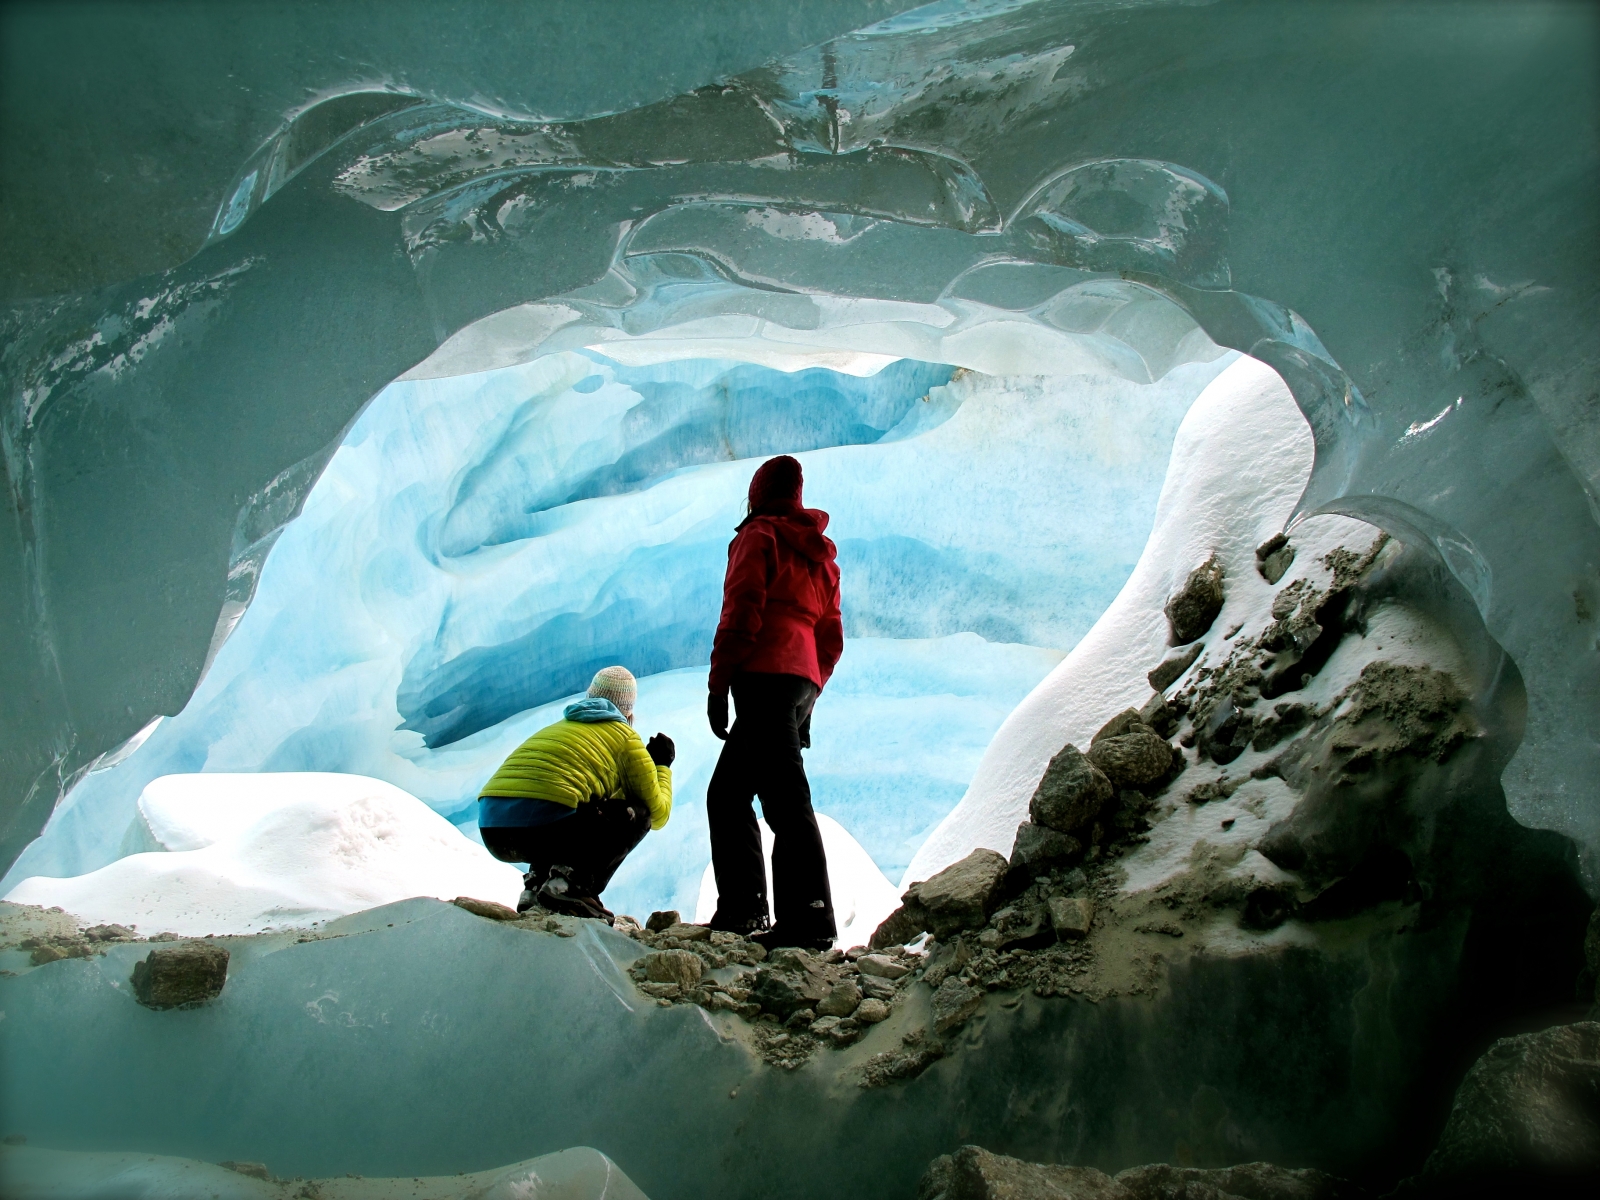 La langue glaciaire réserve de belles surprises, comme le passage cette petite voûte débouchant sur un amphithéâtre de glace.



Le Nouvelliste